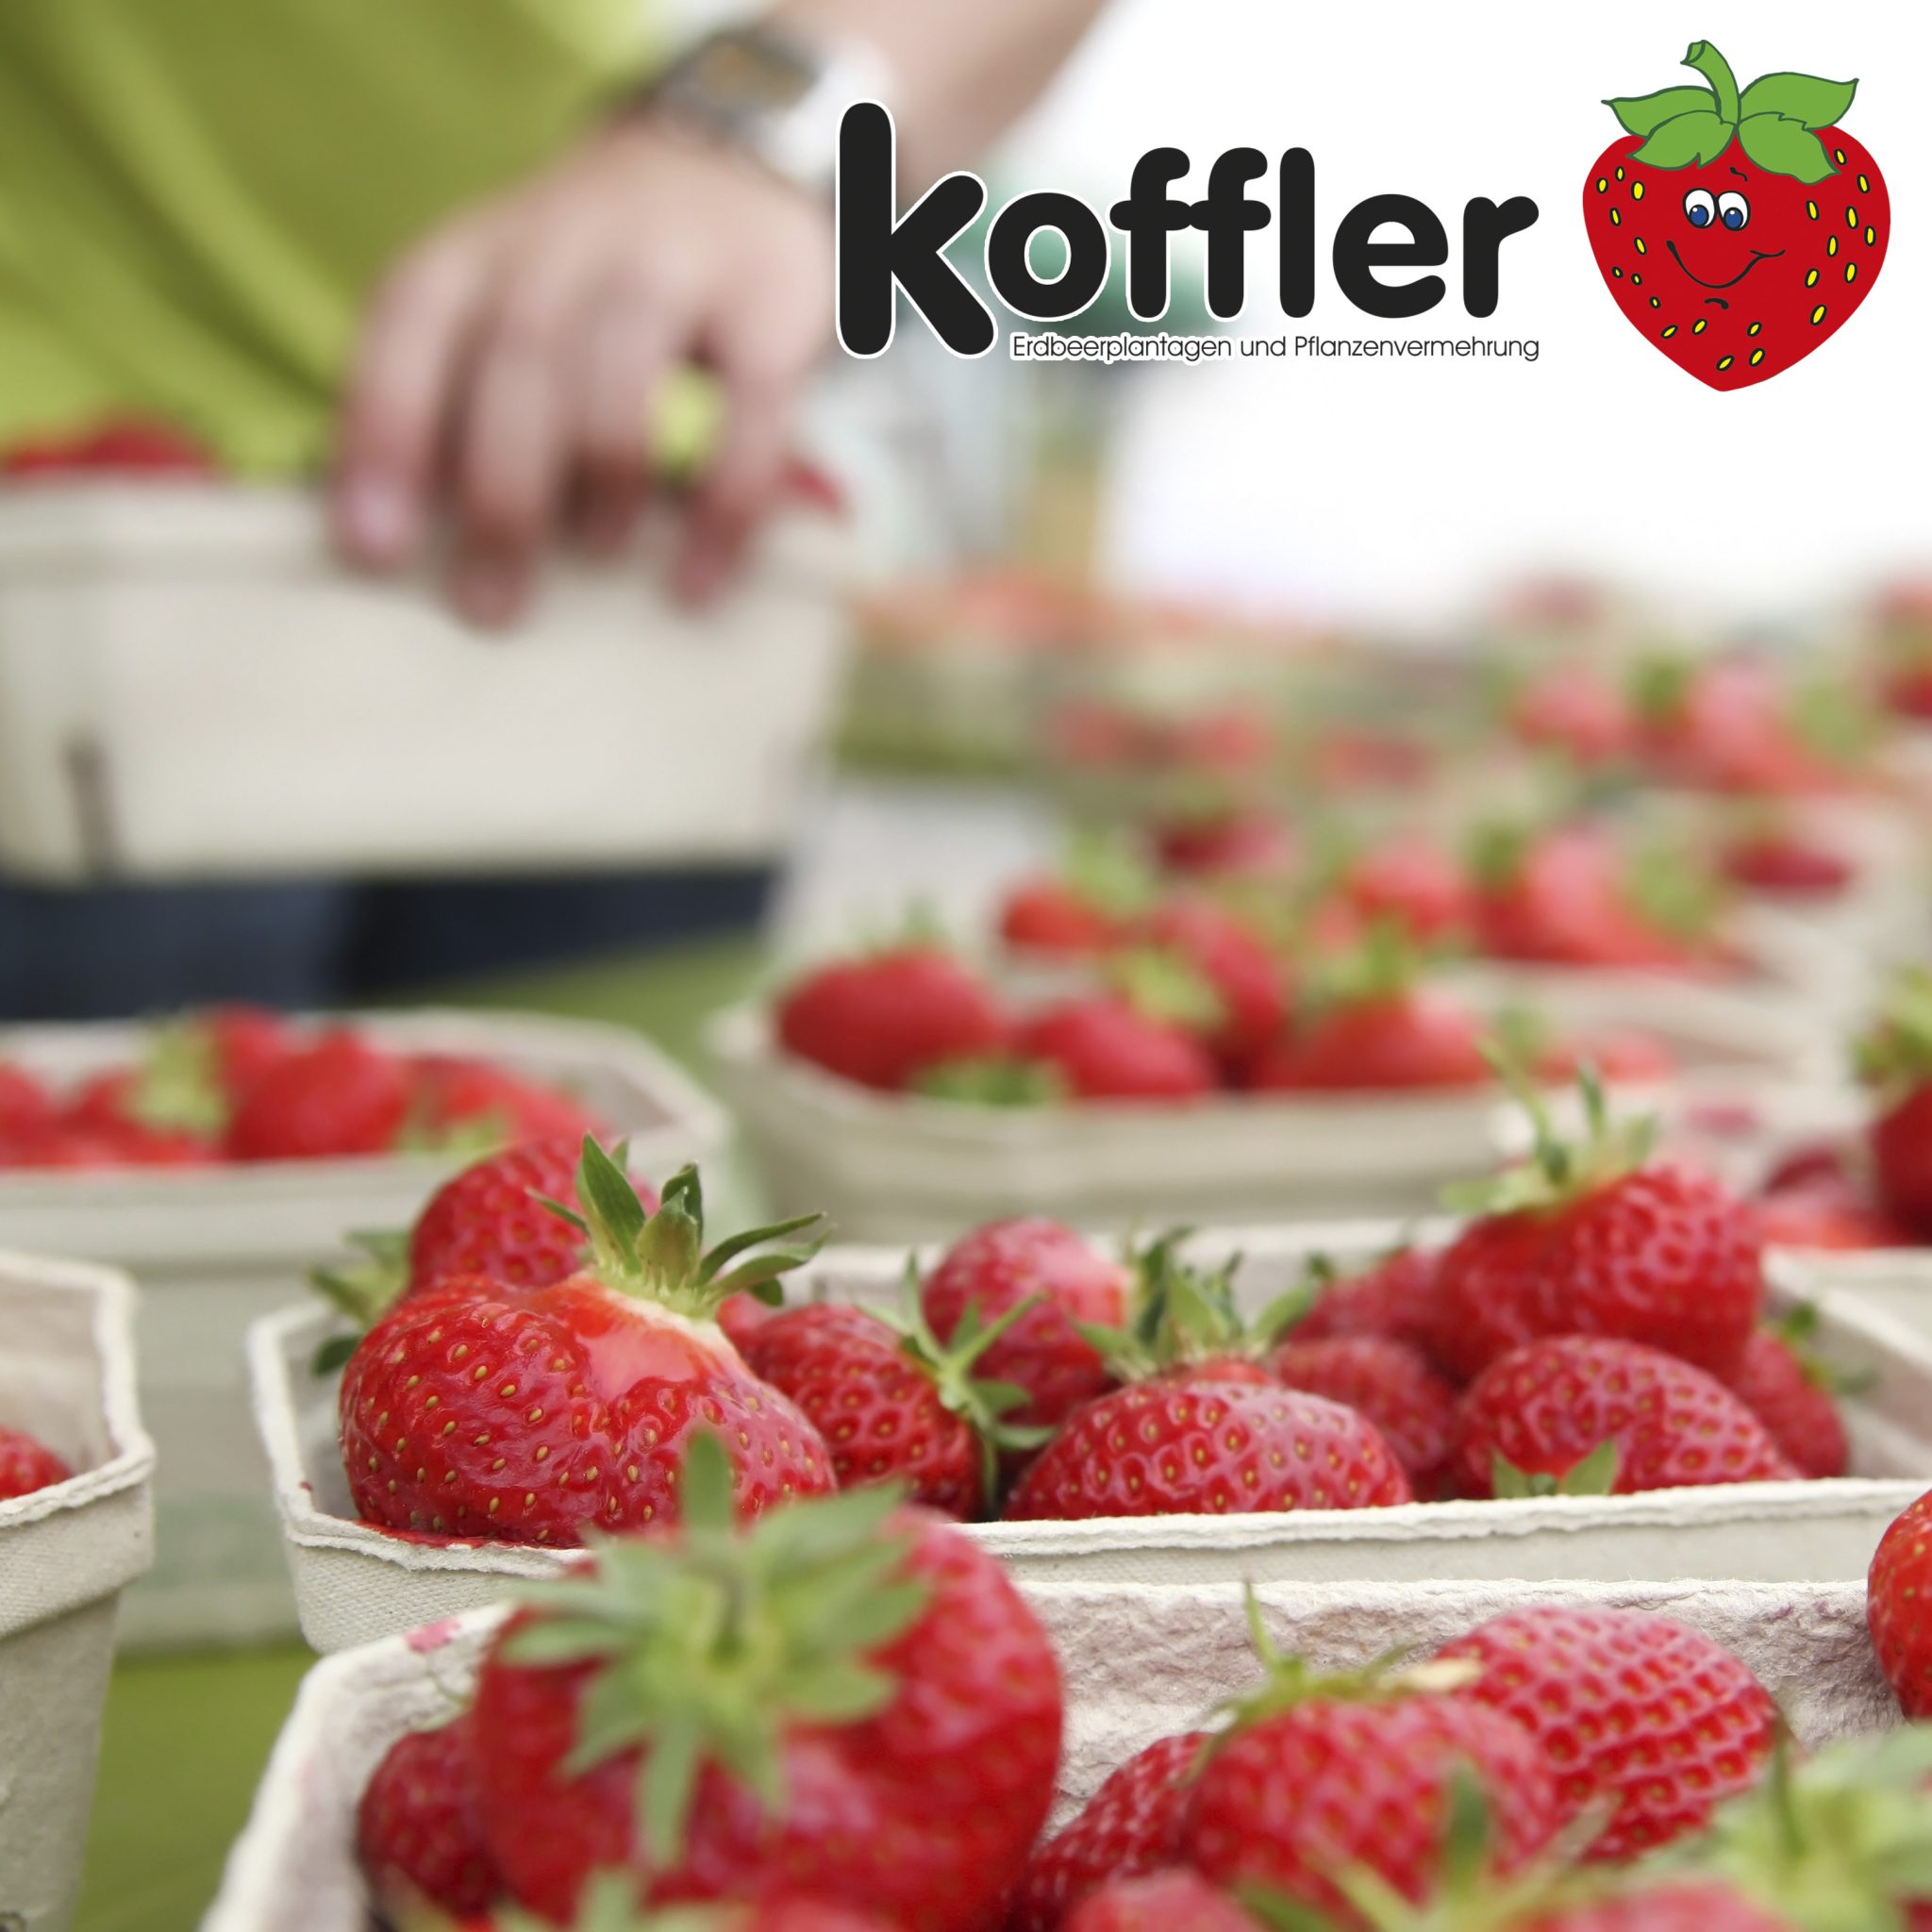 🍓💥 Sommer Superfood-Entdeckung: Erdbeeren! 🌞